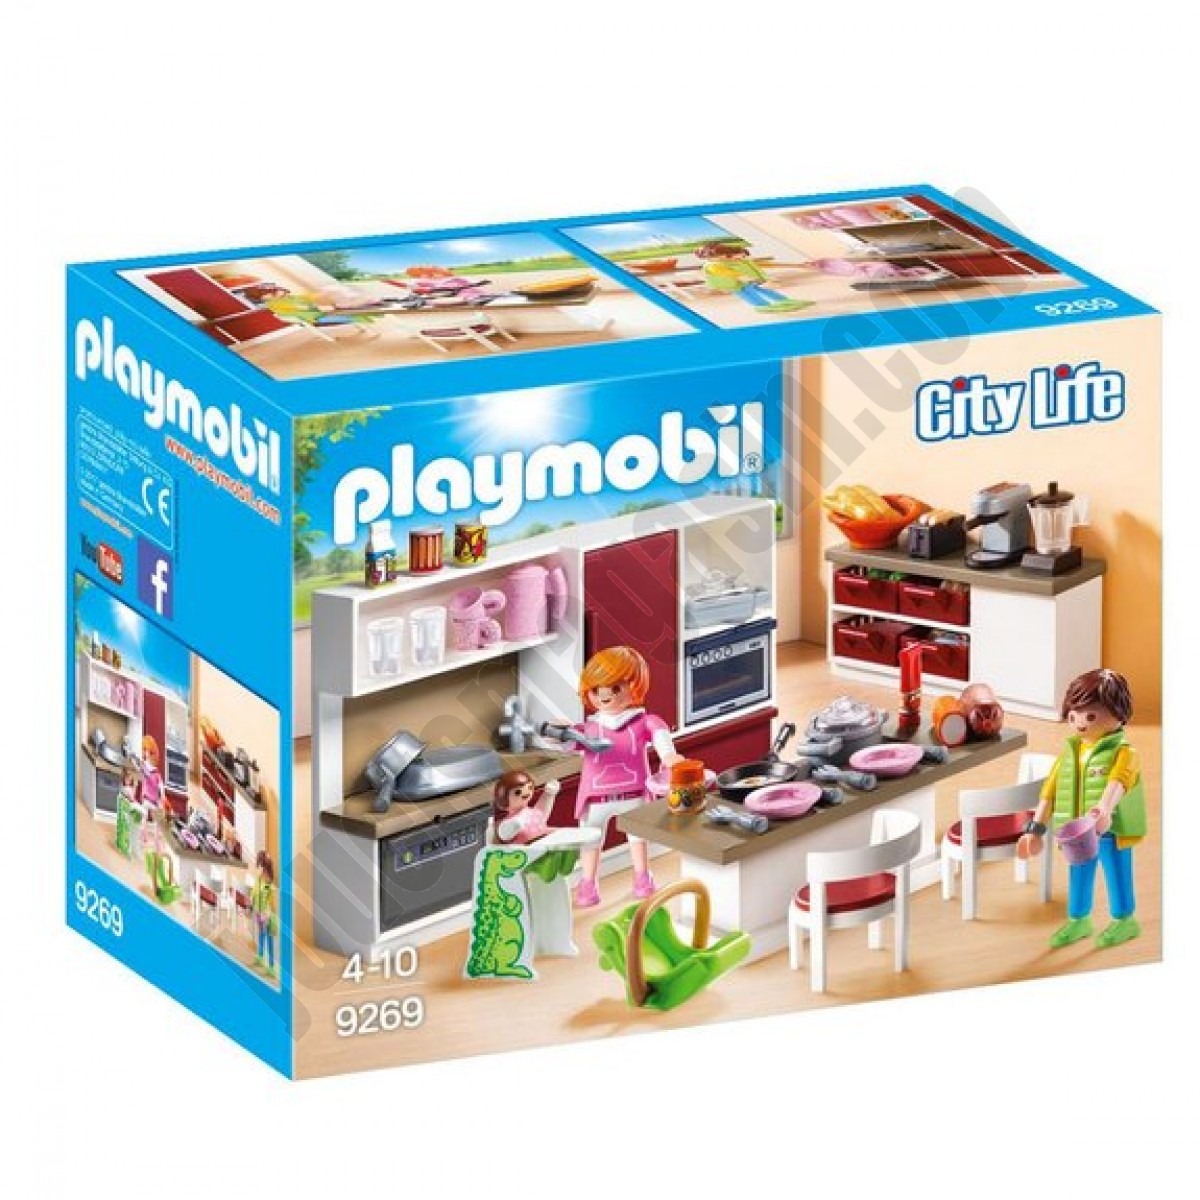 Cuisine aménagée Playmobil City Life - déstockage - Cuisine aménagée Playmobil City Life - déstockage